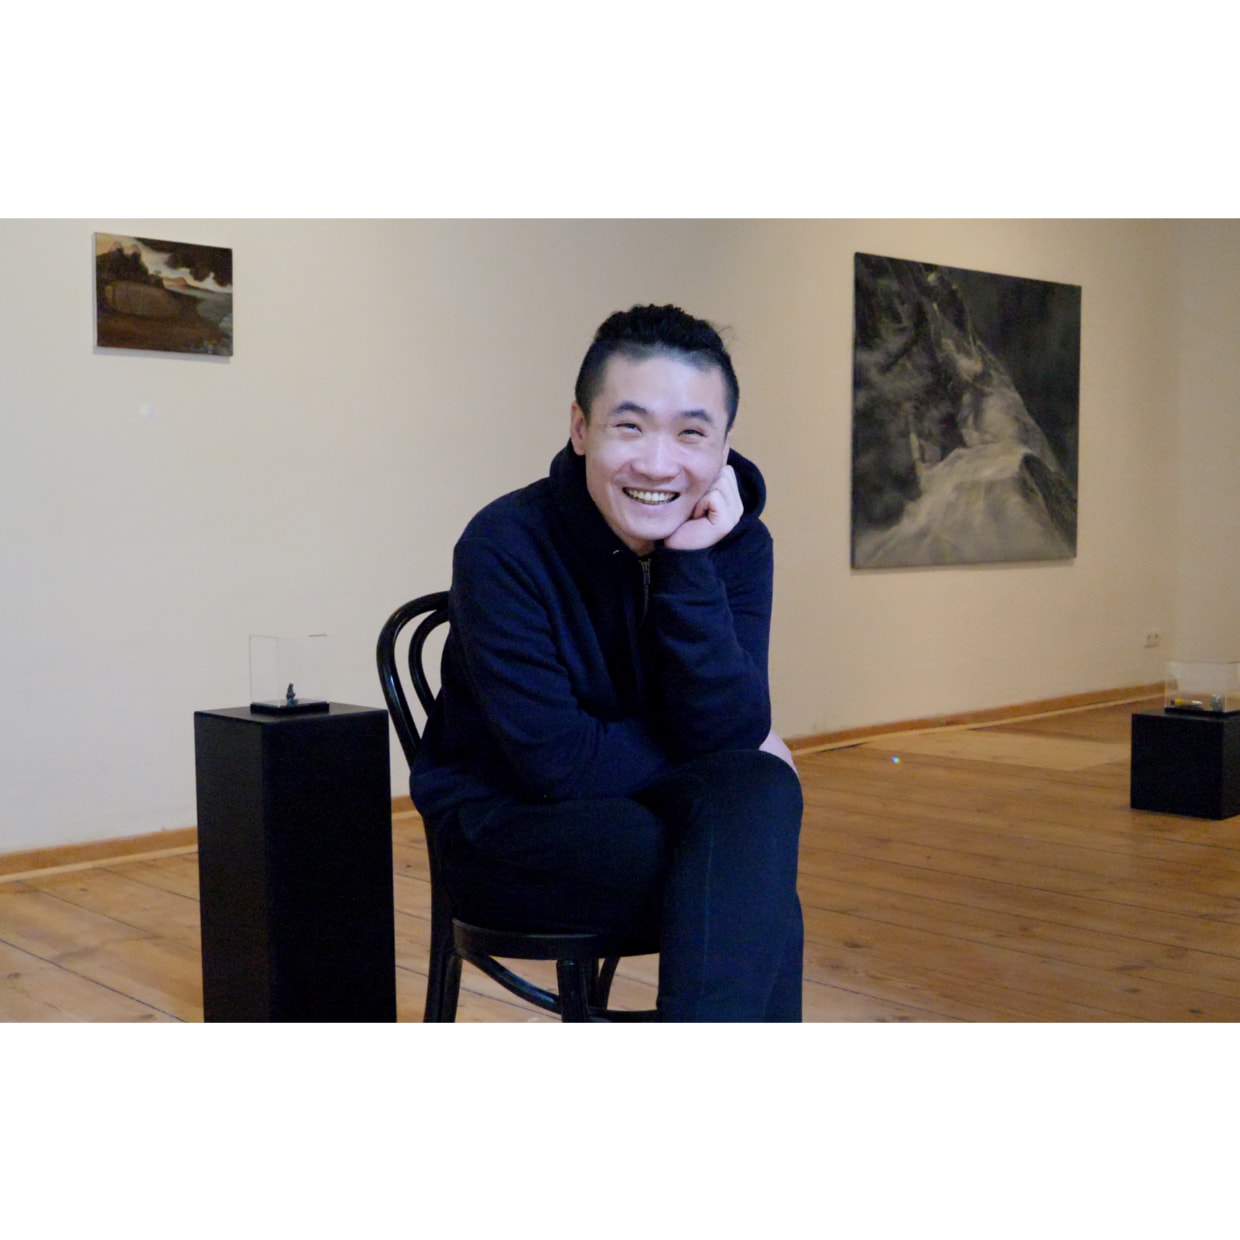 ARTIST: Liu Guangli Liu Guangli was born in 1990 in Lengshuijiang, China. He currently lives and works in Paris. He...